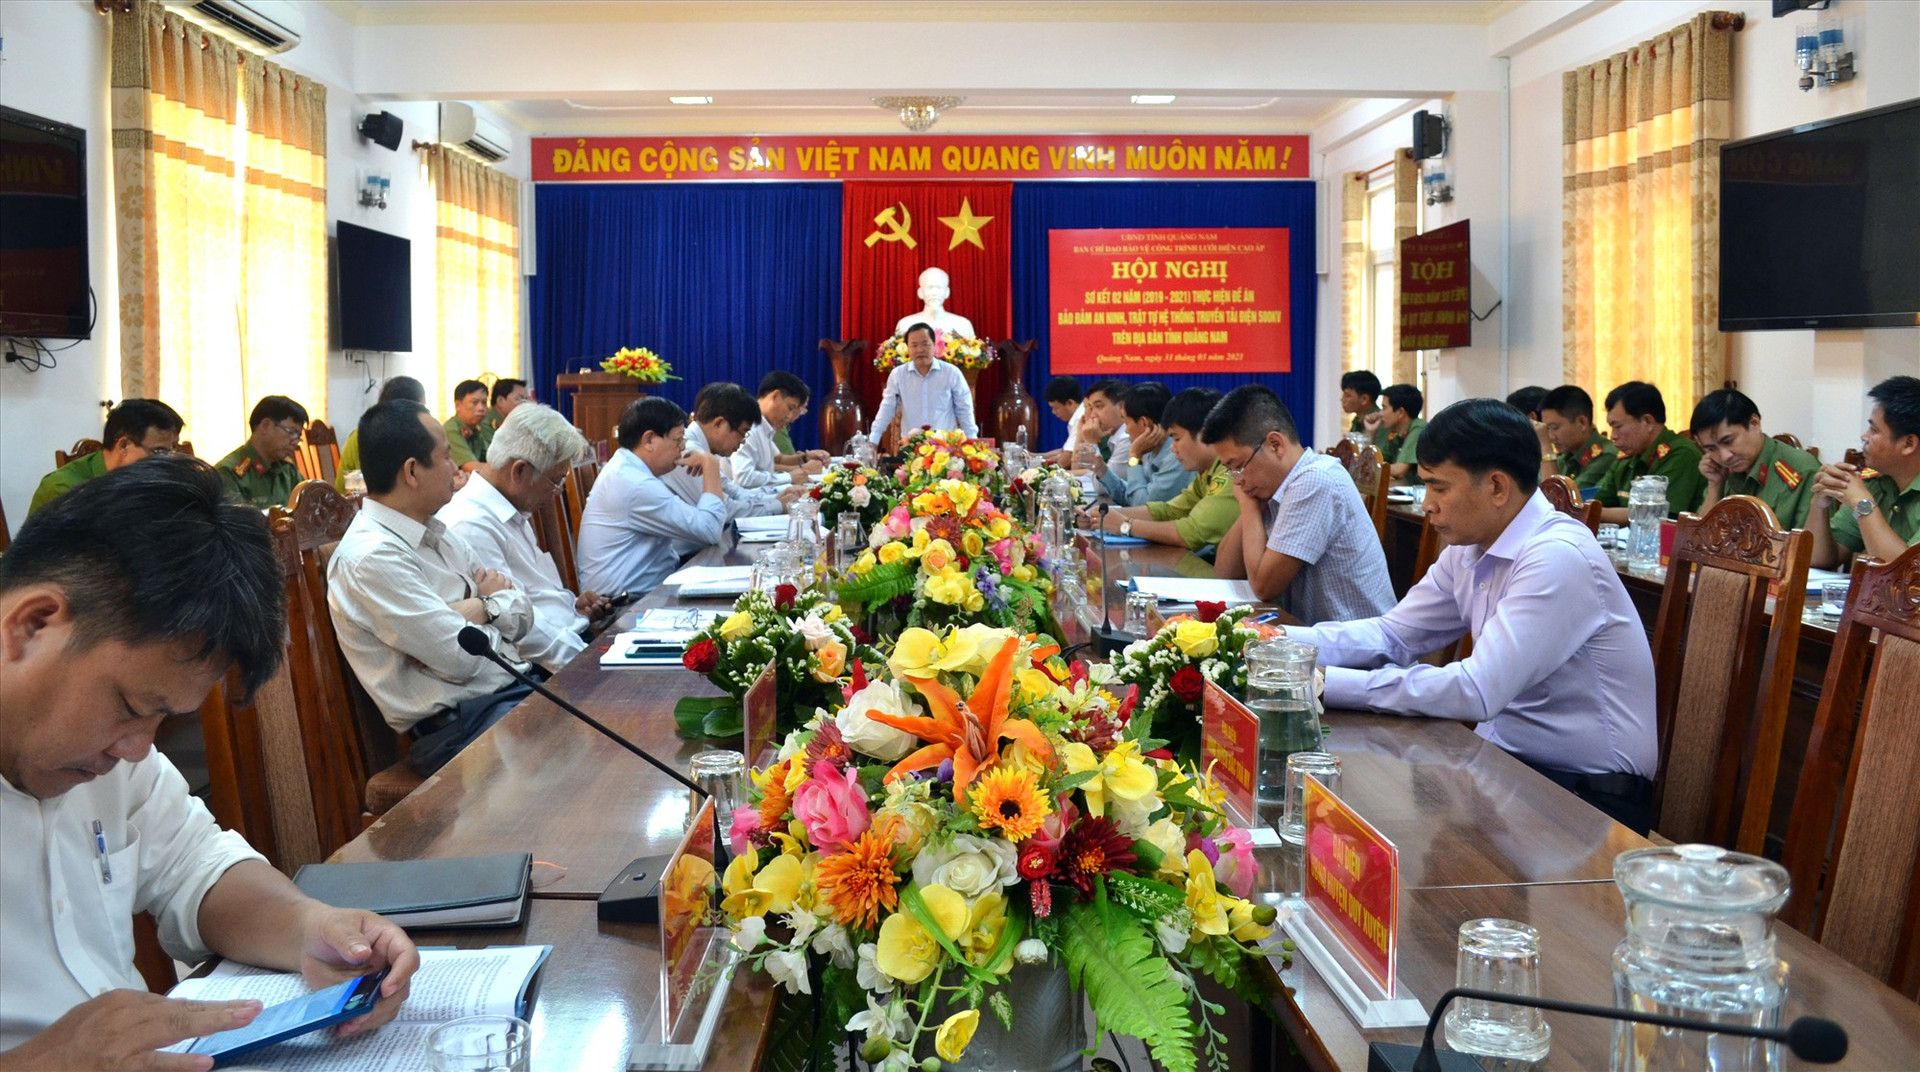 Phó Chủ tịch UBND tỉnh Nguyễn Hồng Quang kết luận hội nghị.